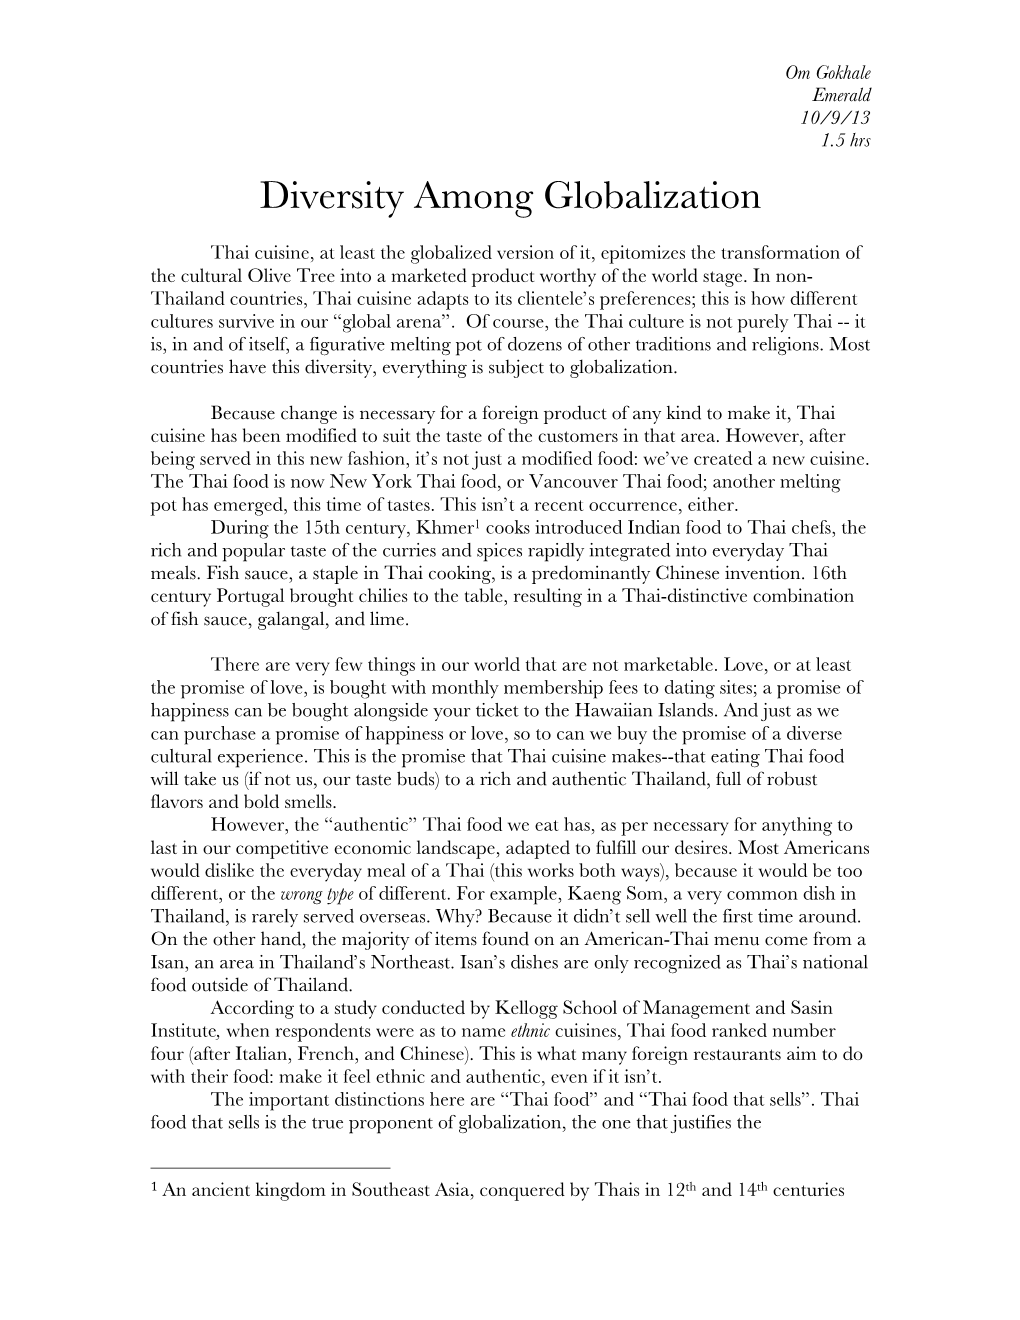 Diversity Among Globalization